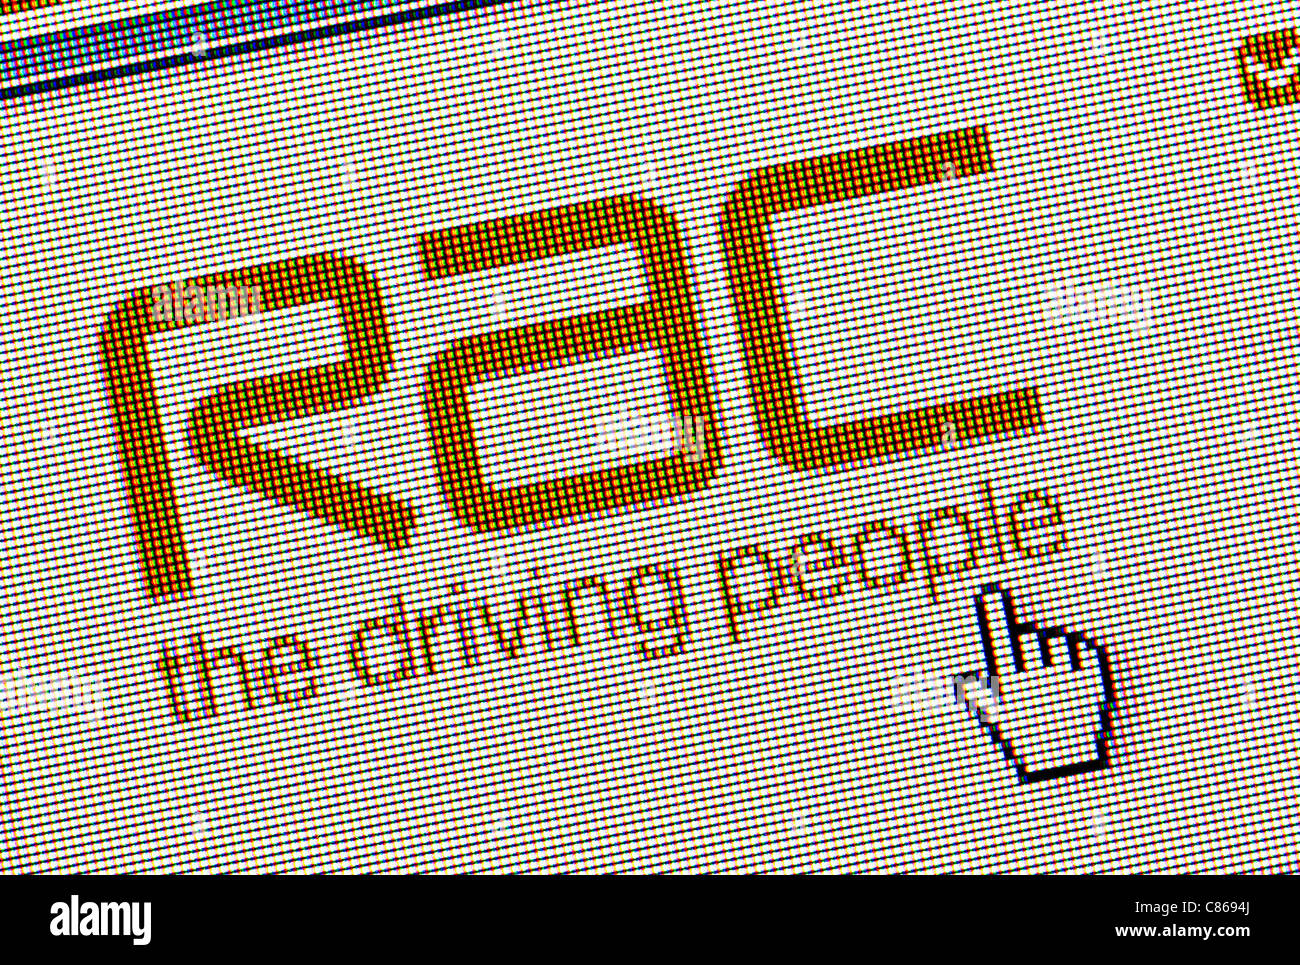 Le logo et le site web de RAC close up Banque D'Images